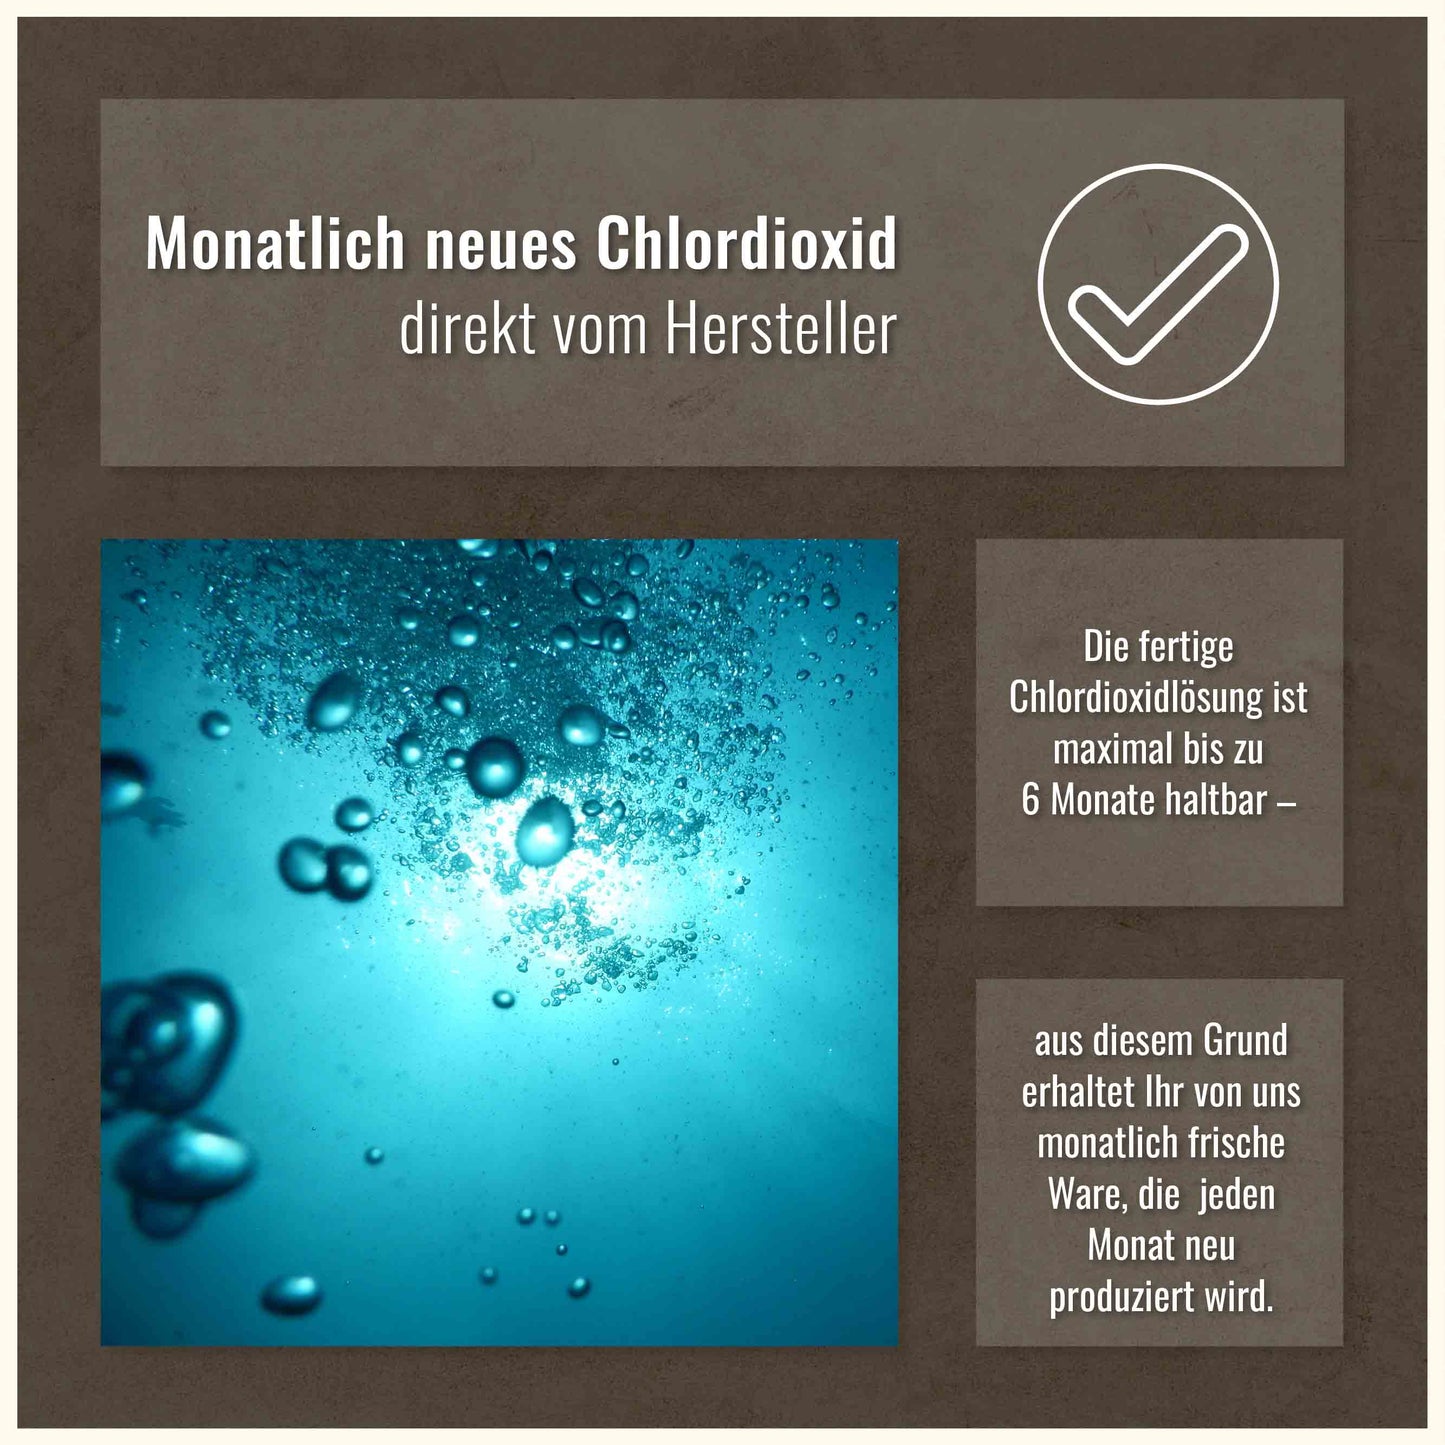 Chlordioxid Lösung - <0,3% 100ml